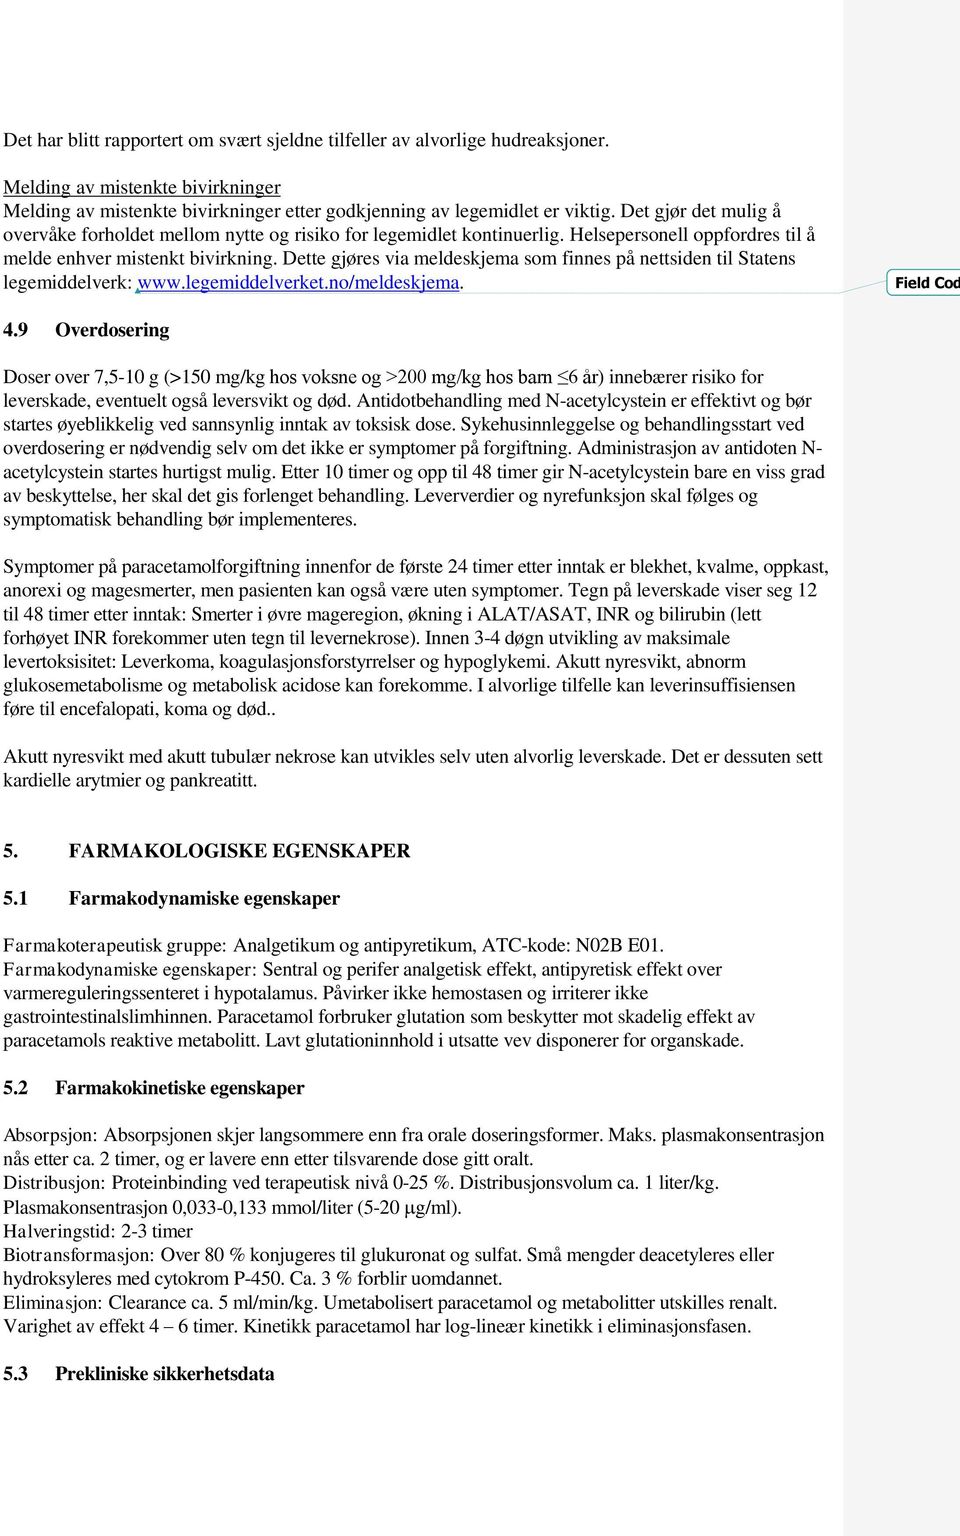 Dette gjøres via meldeskjema som finnes på nettsiden til Statens legemiddelverk: www.legemiddelverket.no/meldeskjema. Field Cod 4.